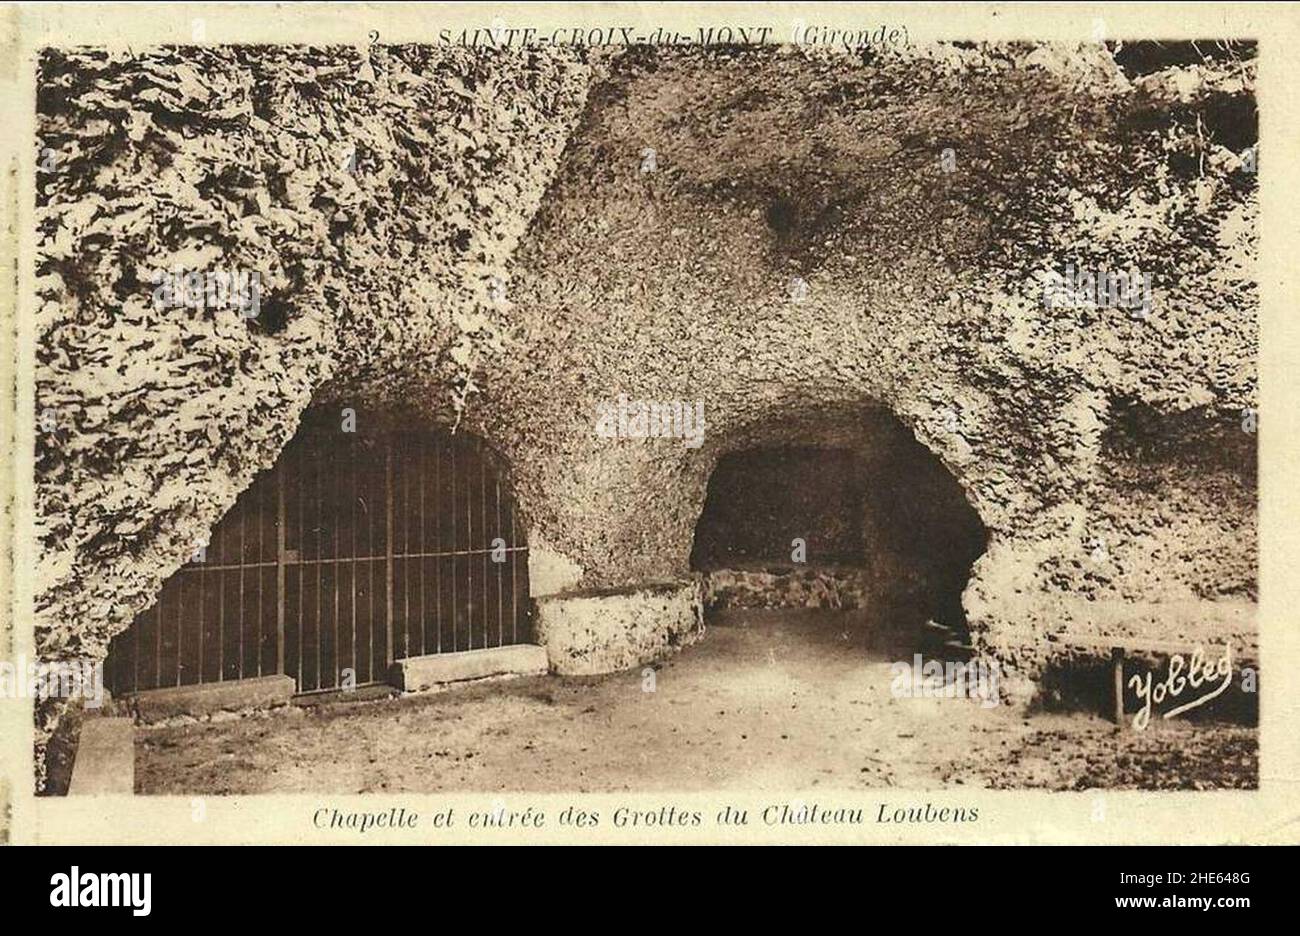 Sainte-Croix-du-Mont - château Loubens grottes 3 Stock Photo - Alamy